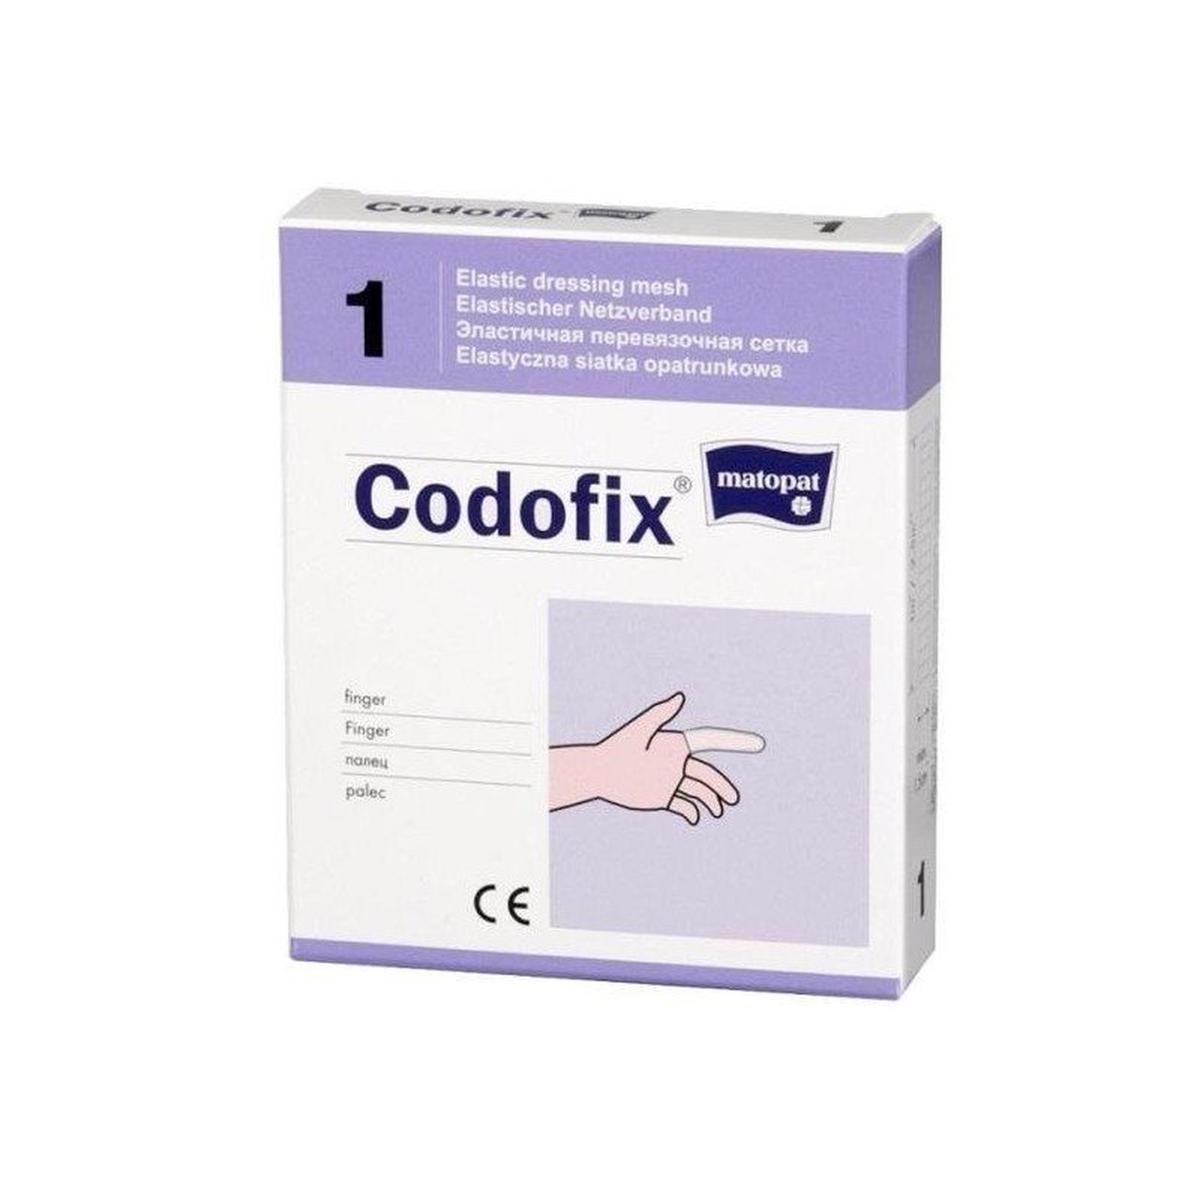 Codofix elastyczna siatka do podtrzymywania opatrunku 1m (palec)